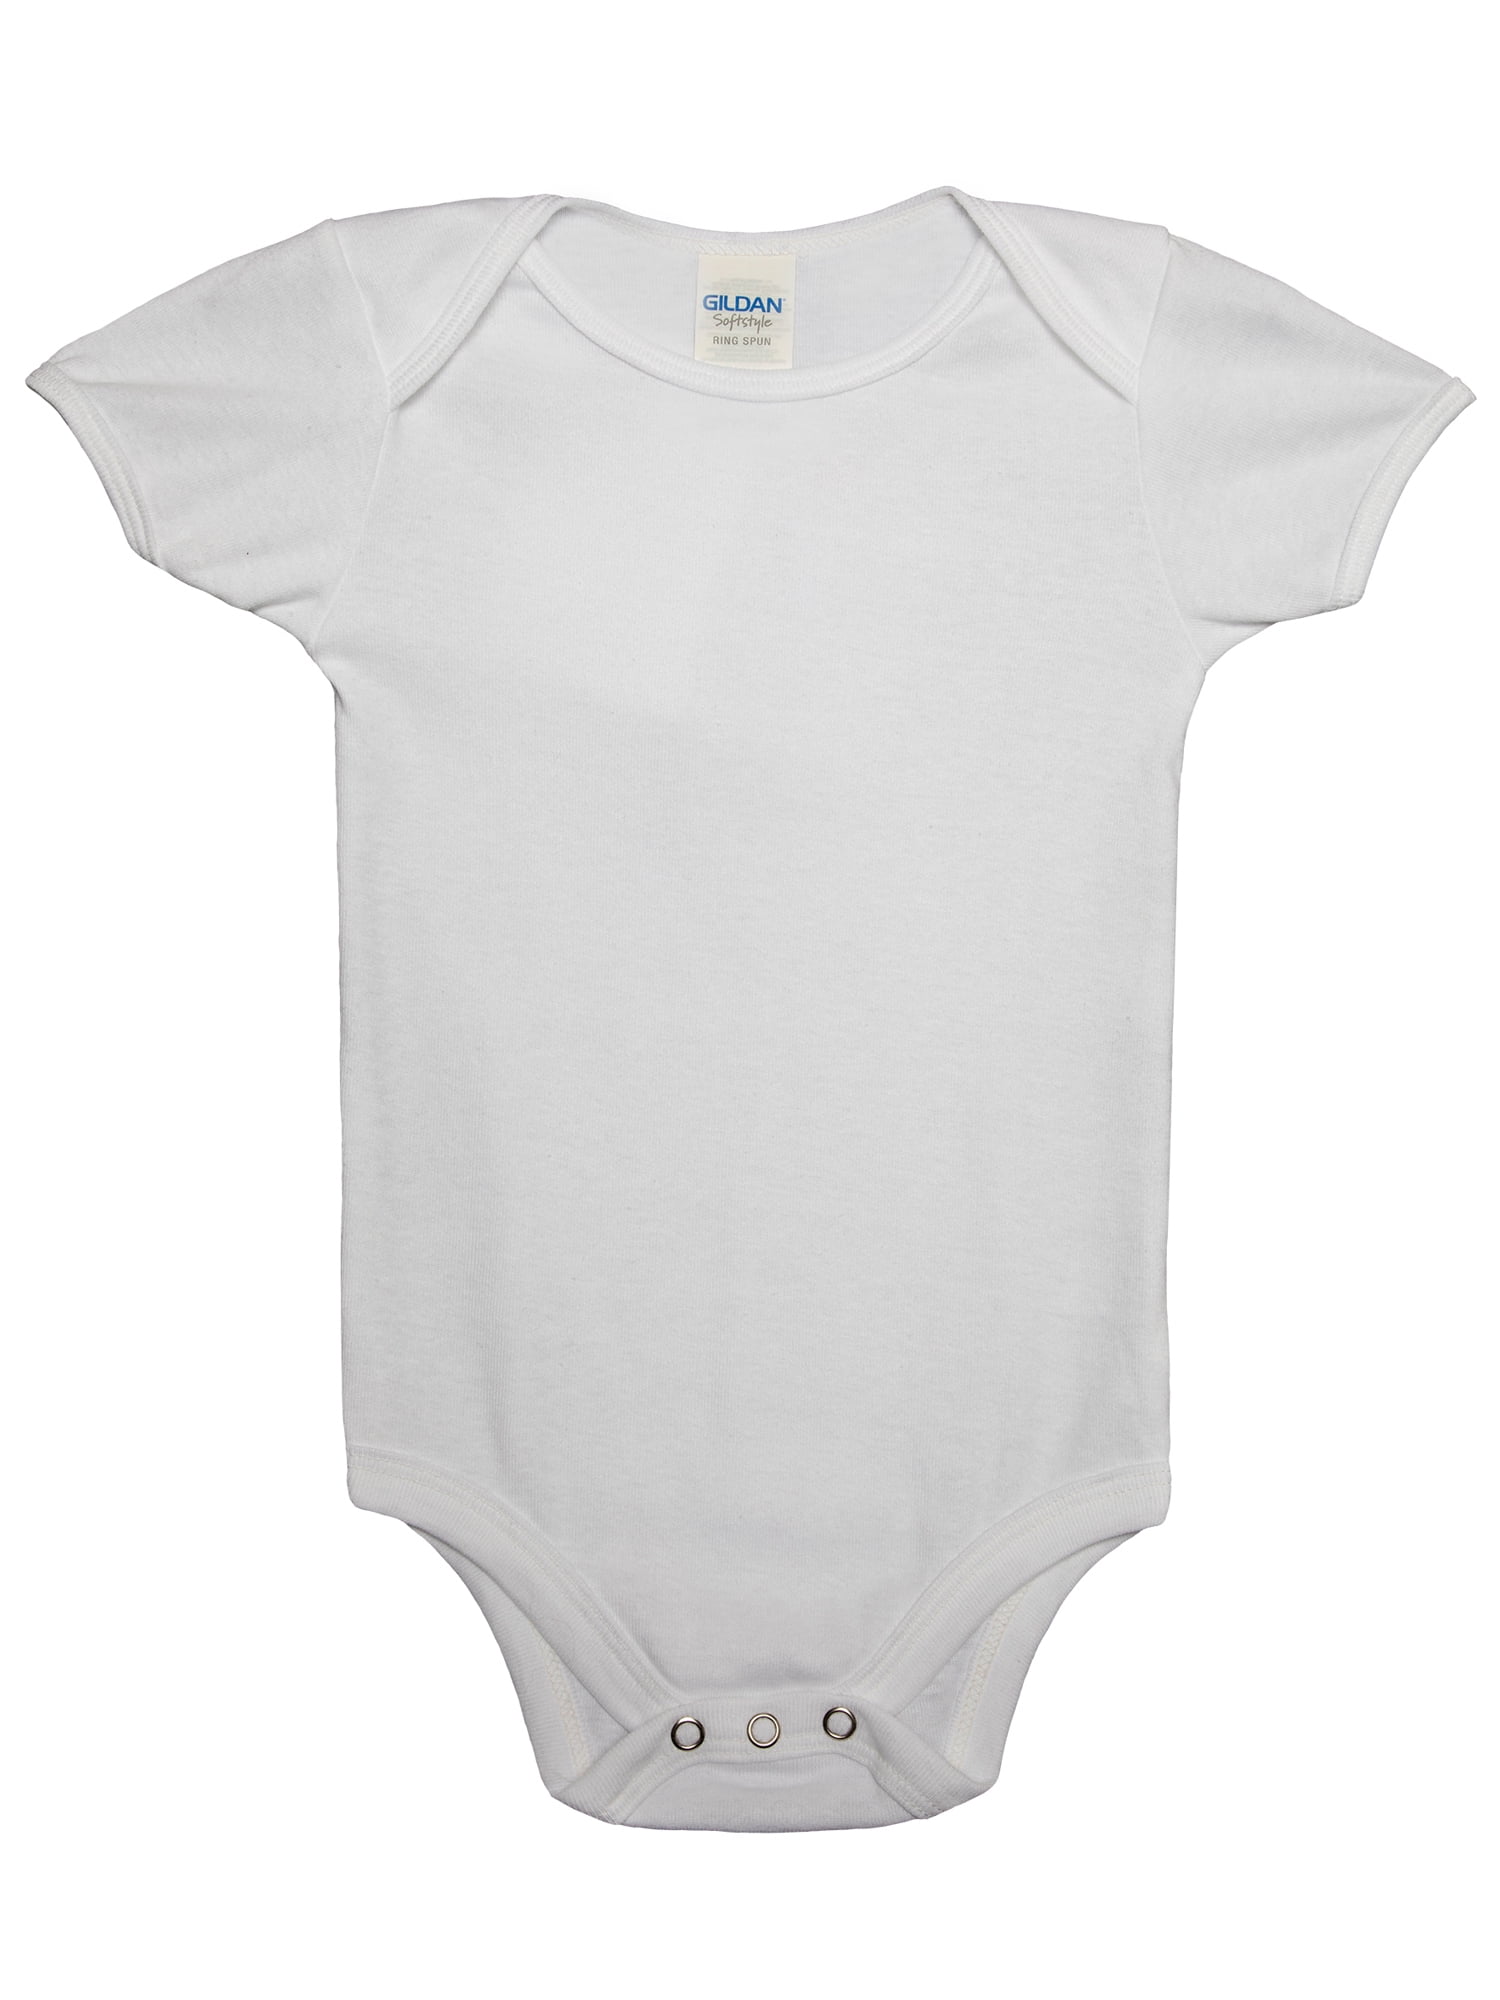 Gildan Cotton White Infant Bodysuit Ages 0-6 Months, Unisex, 1 Each